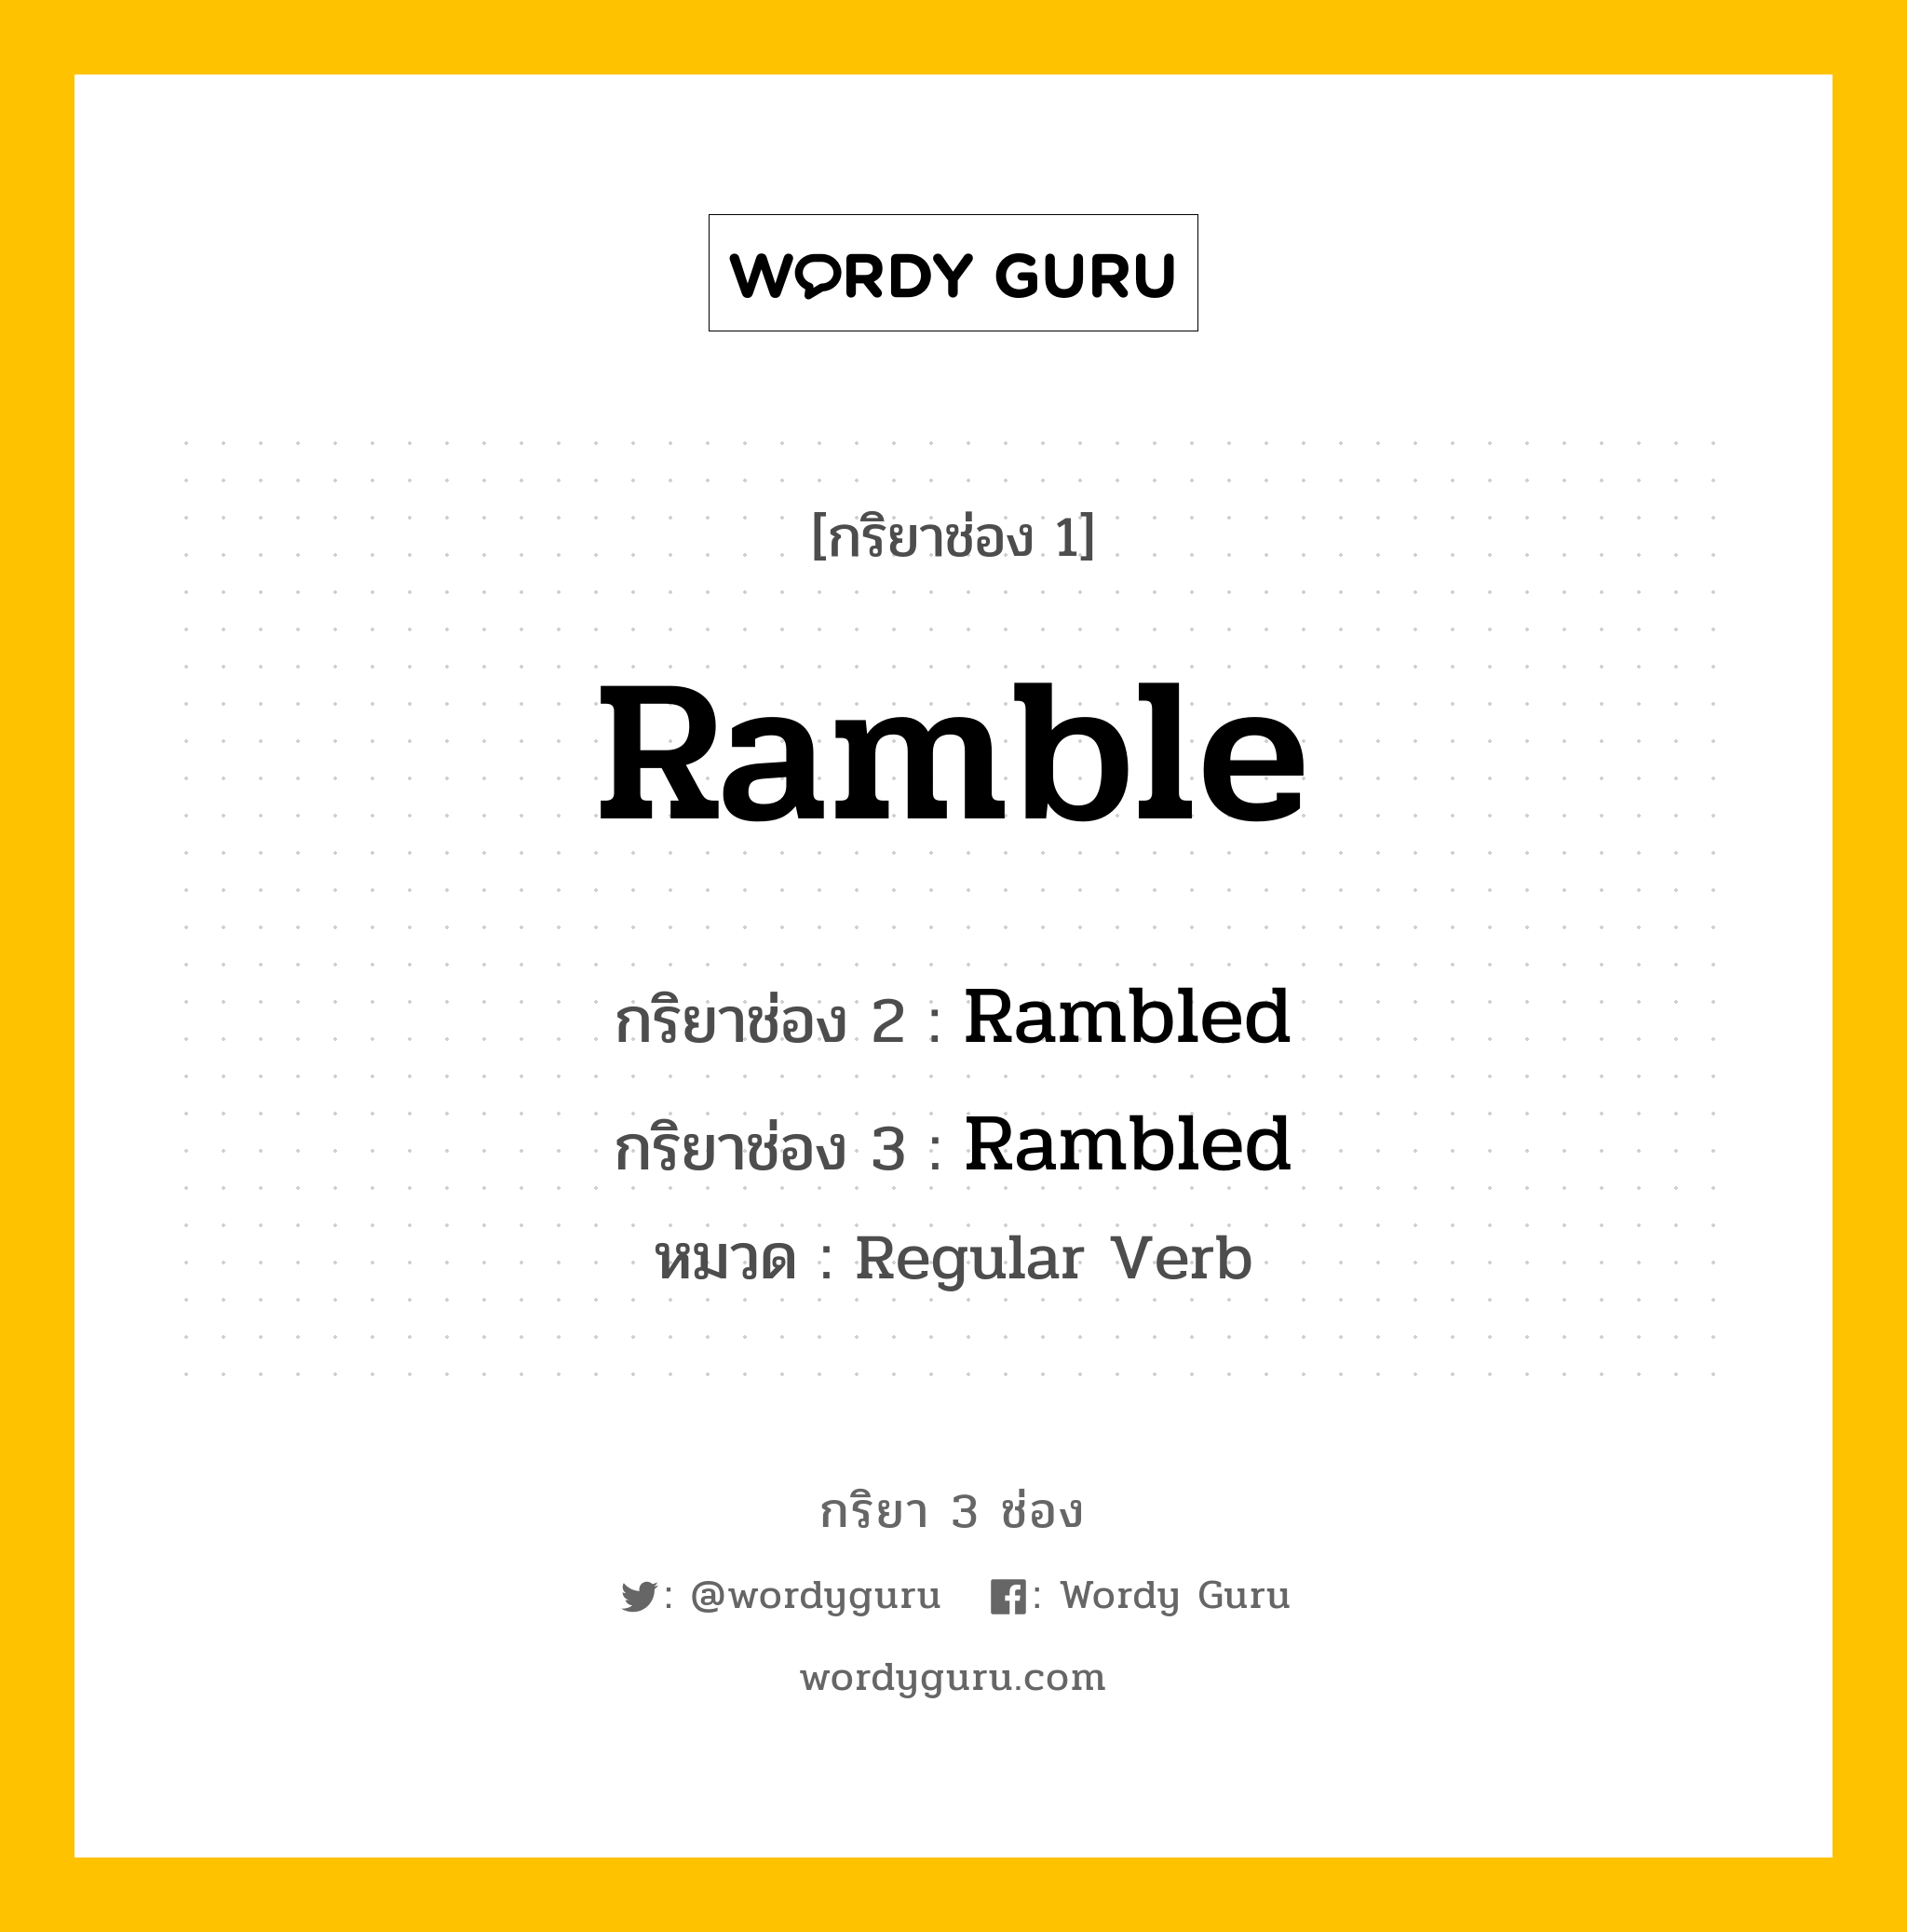 กริยา 3 ช่อง: Ramble ช่อง 2 Ramble ช่อง 3 คืออะไร, กริยาช่อง 1 Ramble กริยาช่อง 2 Rambled กริยาช่อง 3 Rambled หมวด Regular Verb หมวด Regular Verb